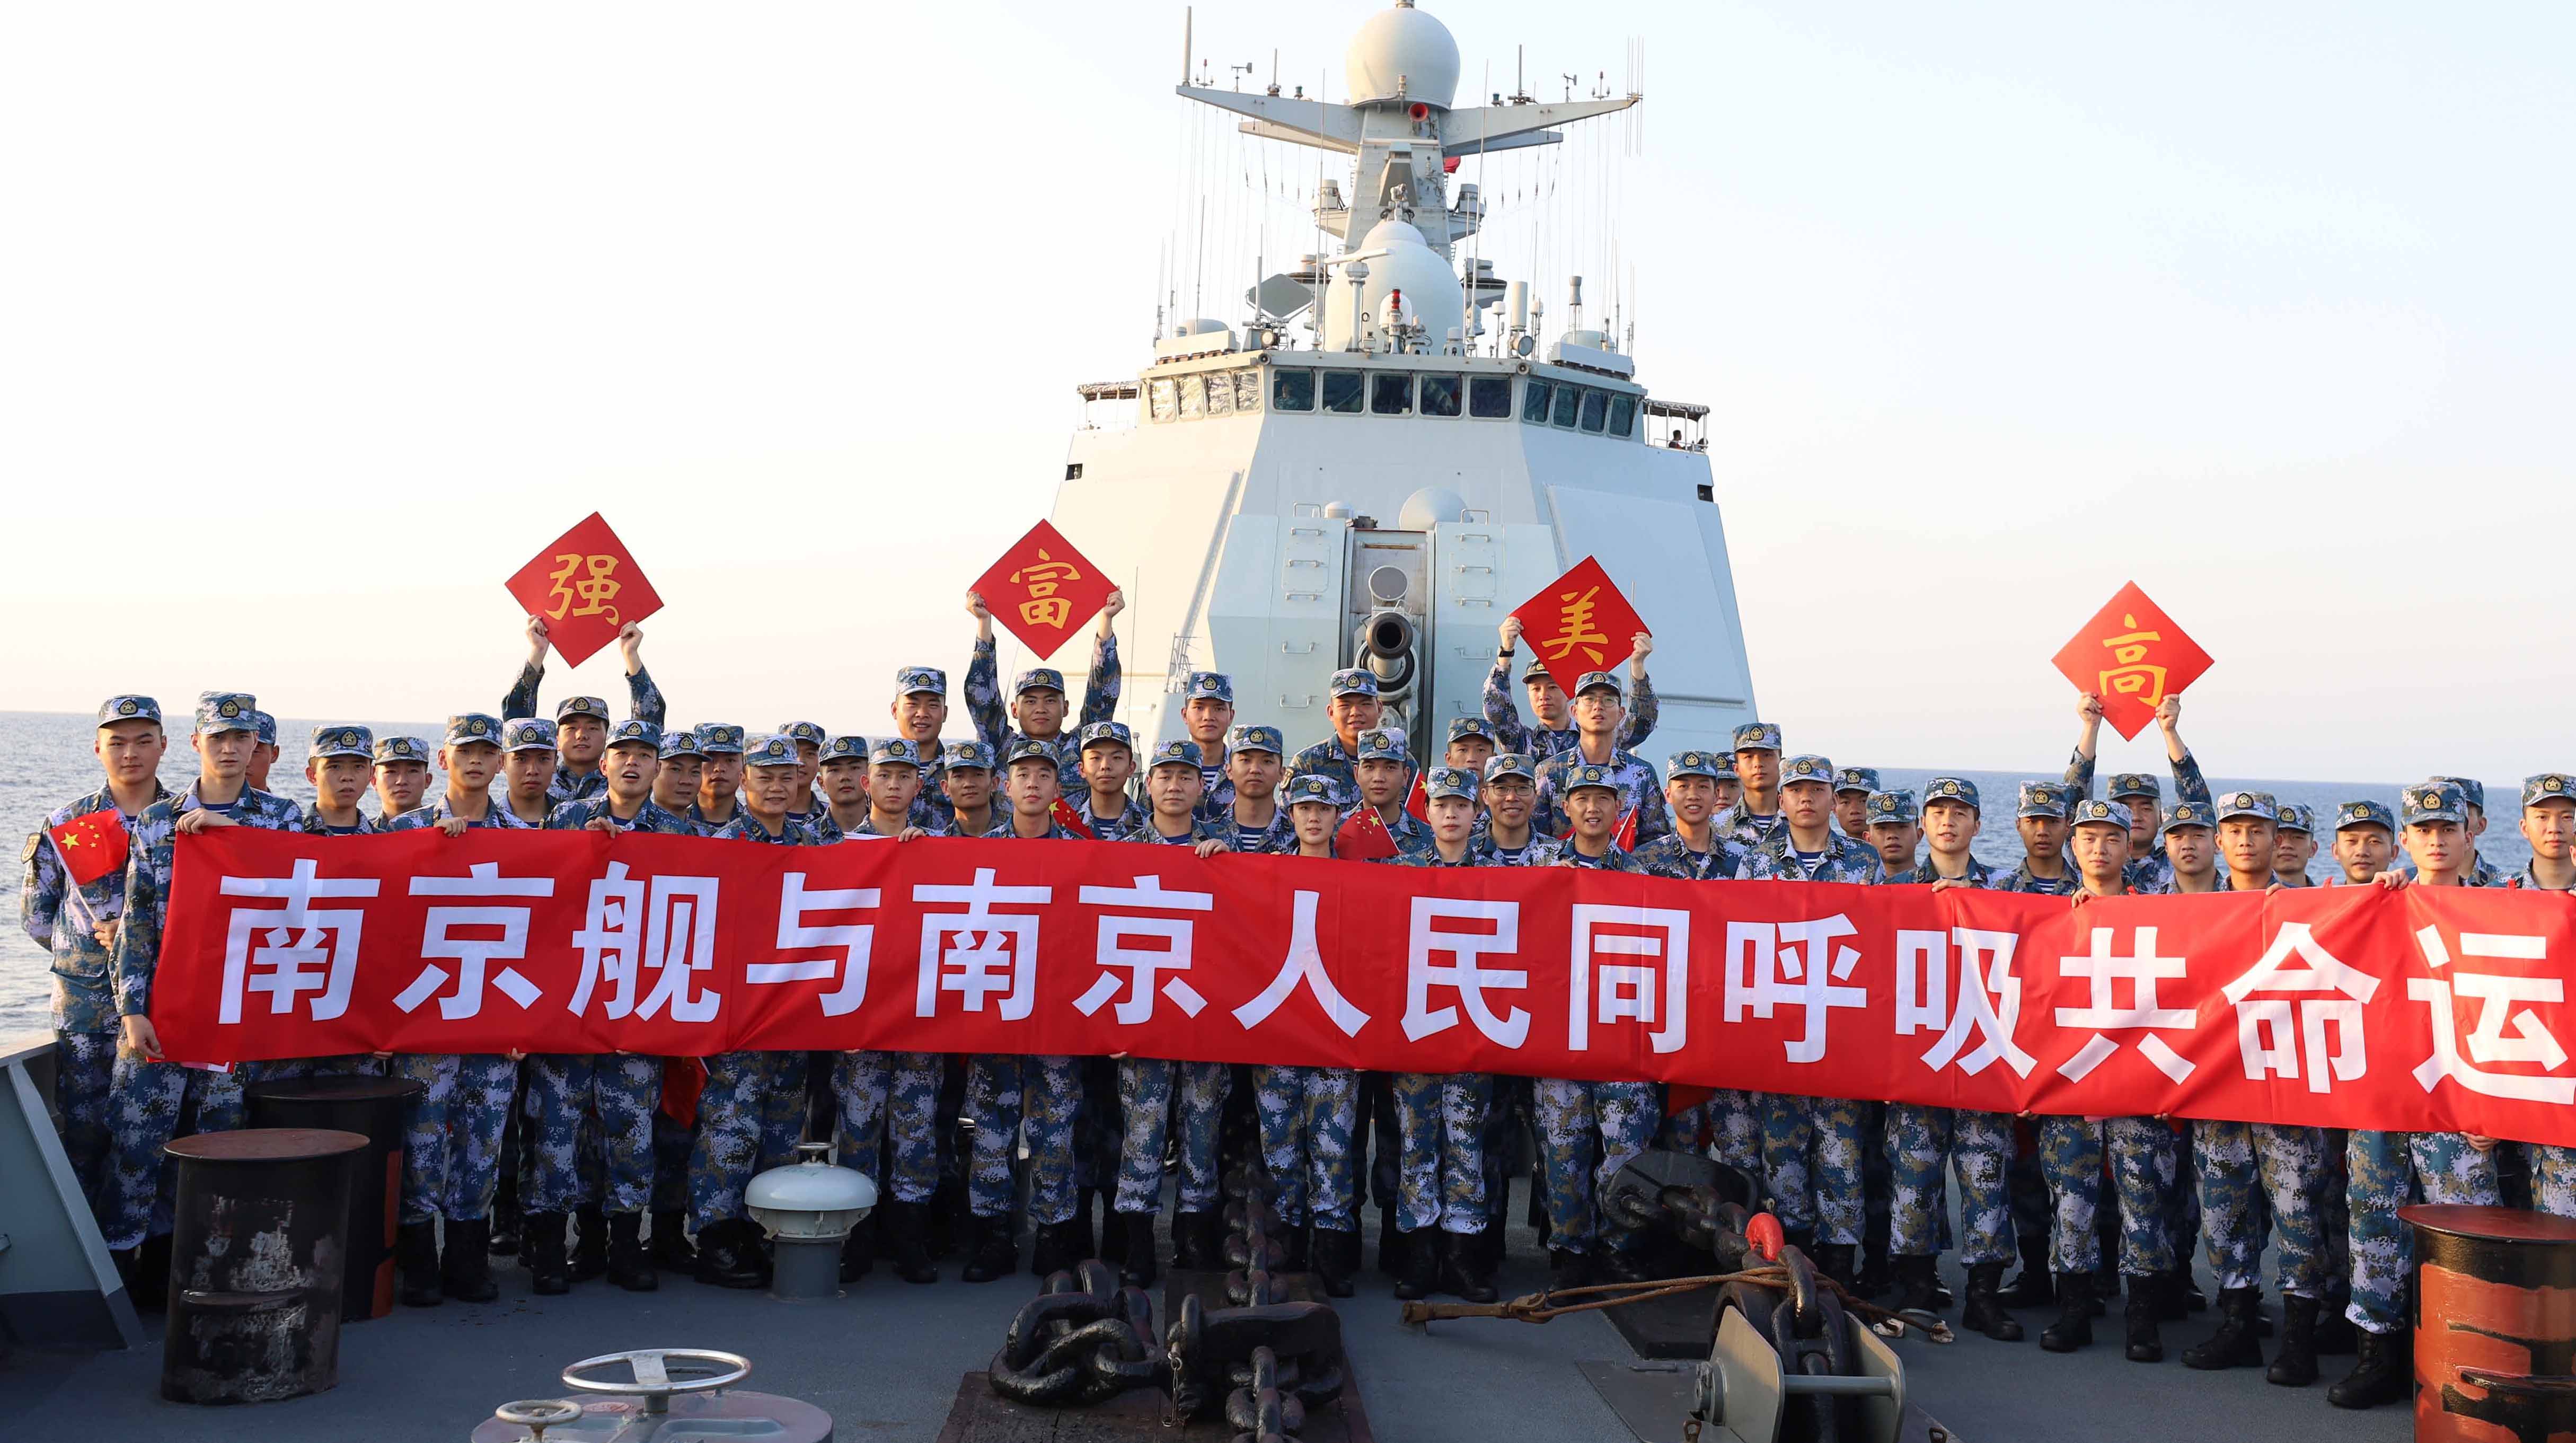 来自亚丁湾的祝福!海军南京舰官兵庆祝新中国72周年华诞